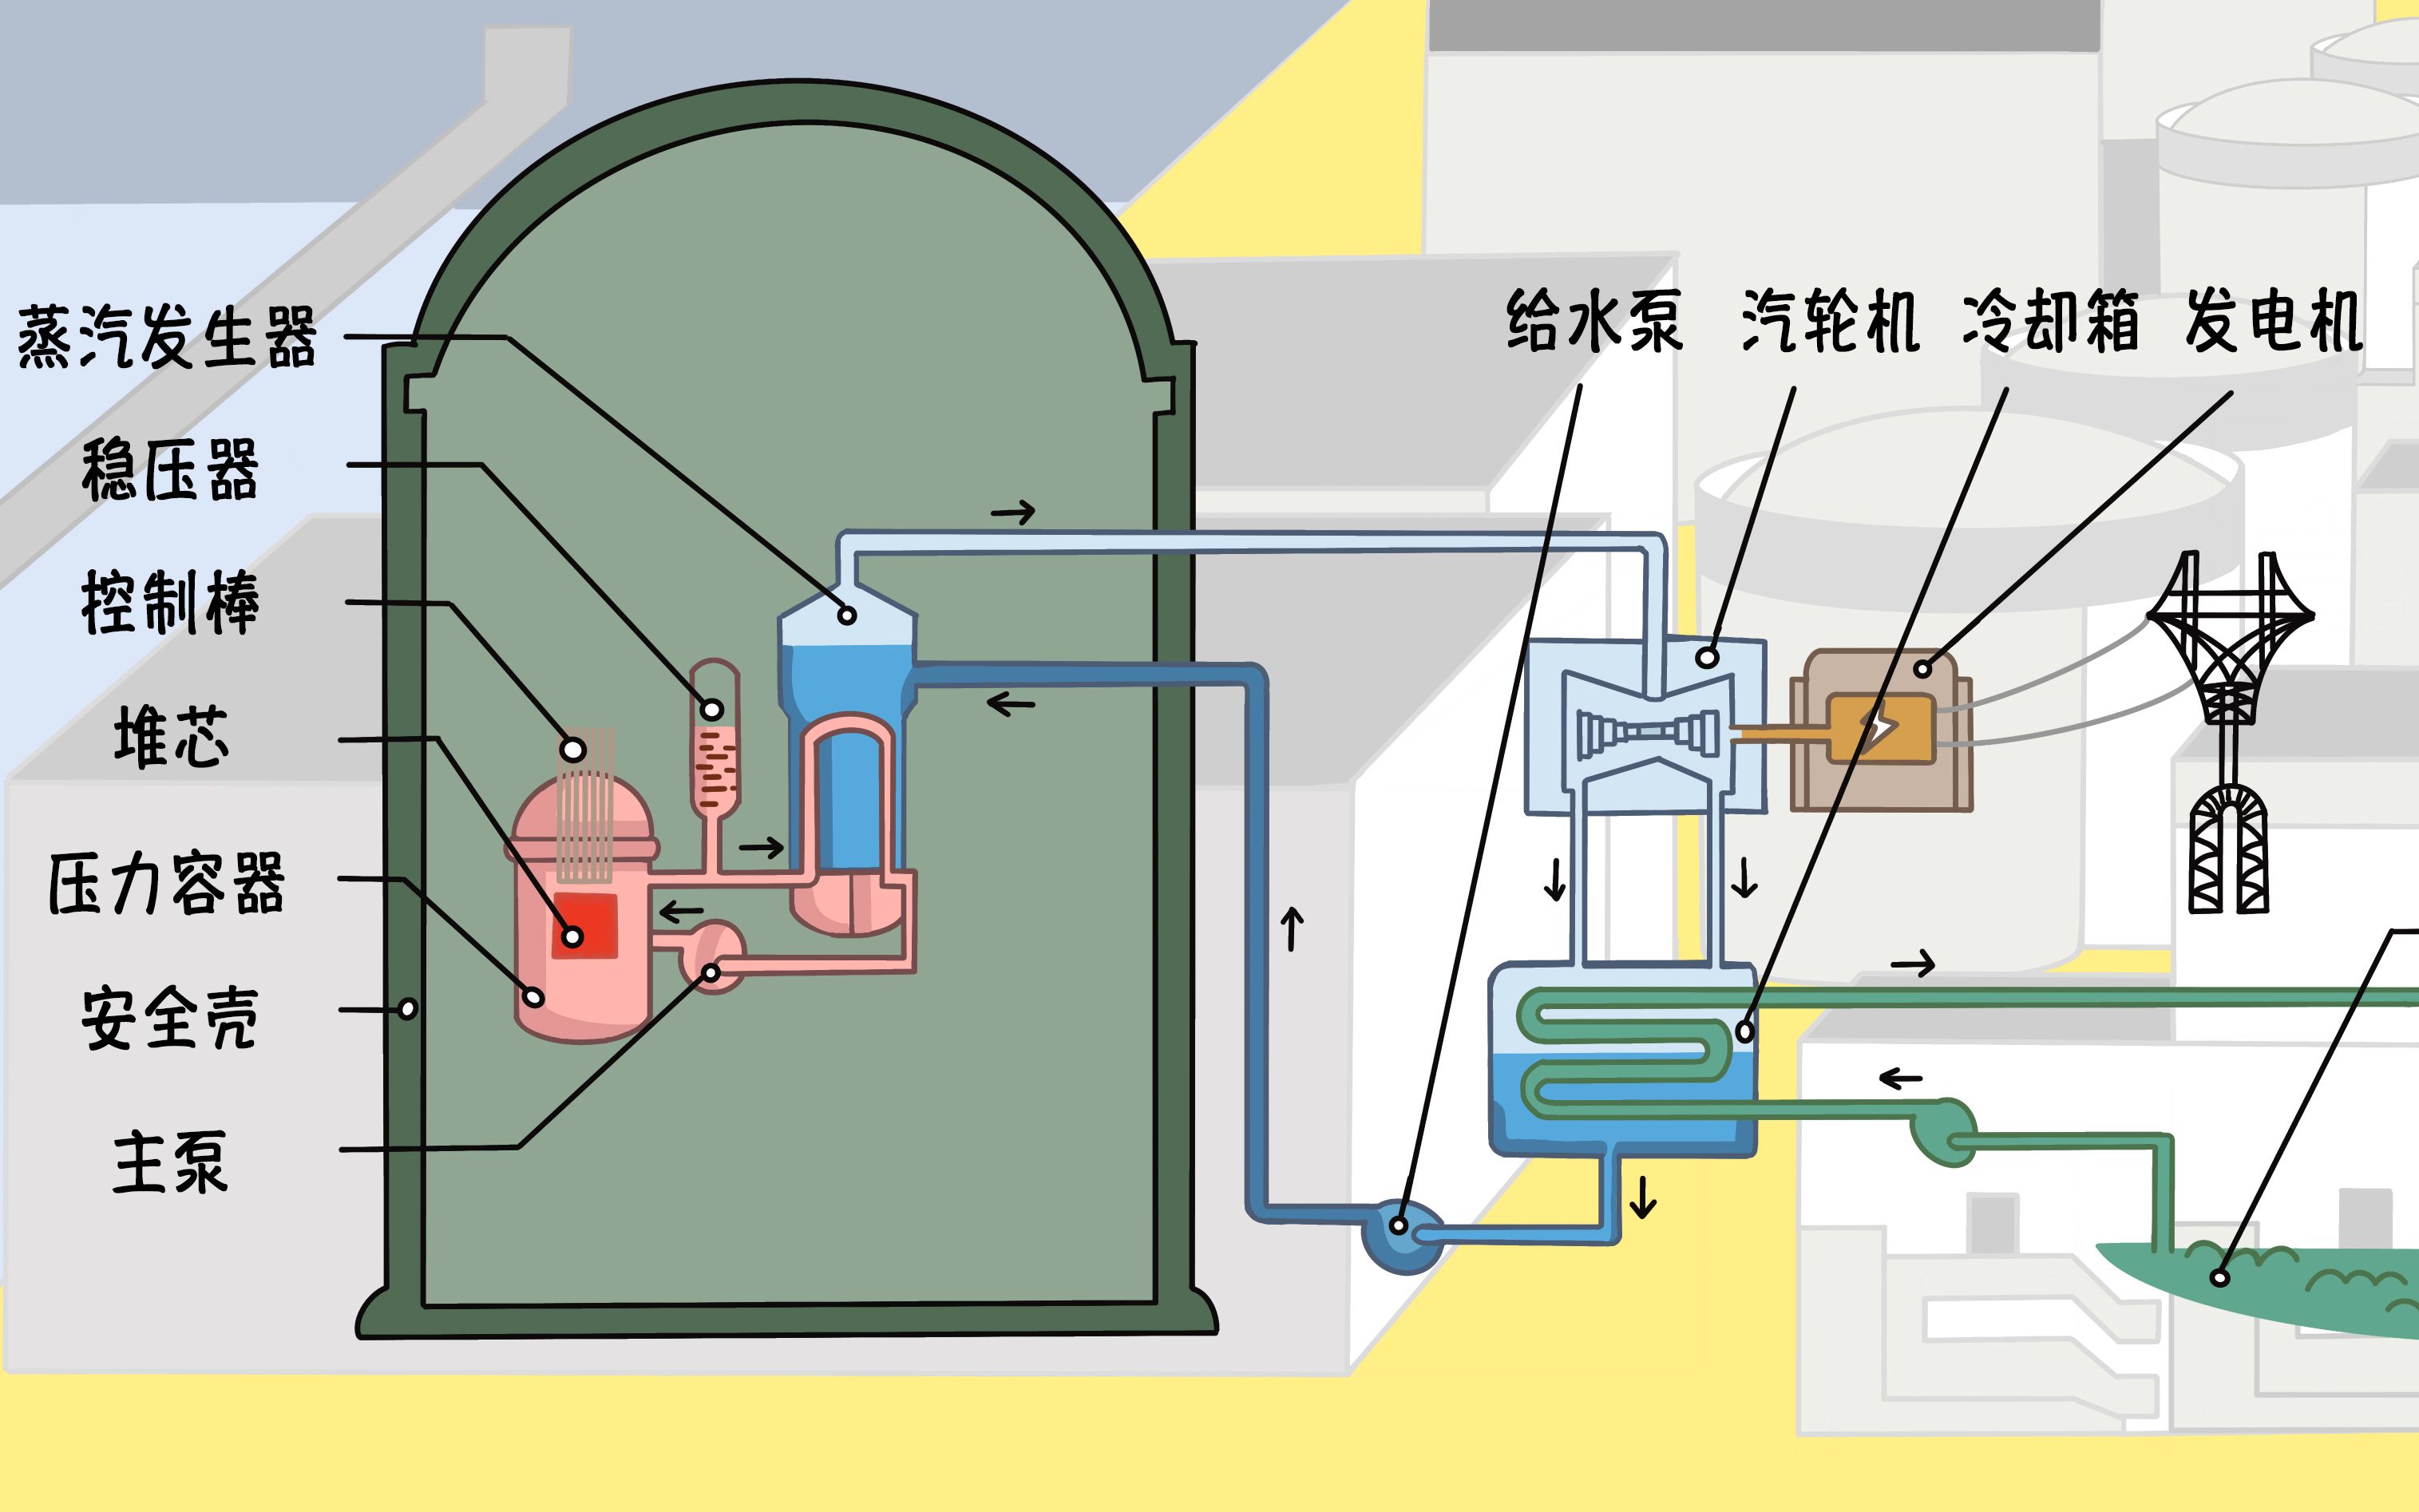 【华龙一号】基于手绘图的核电站热循环动画